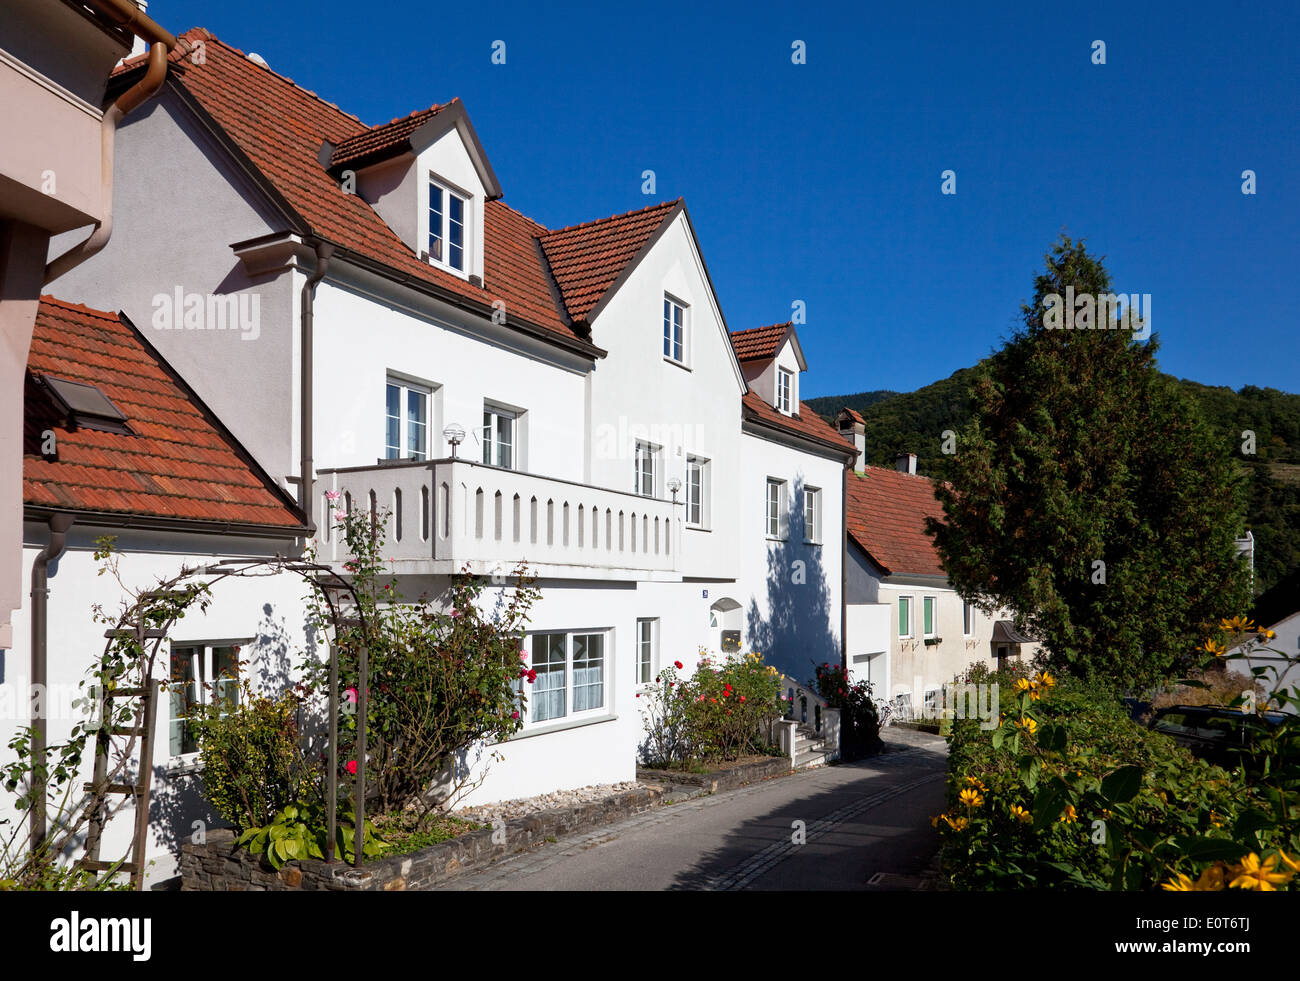 Gebäude in Schwallenbach, Wachau Region, Niederösterreich, Österreich Stockfoto